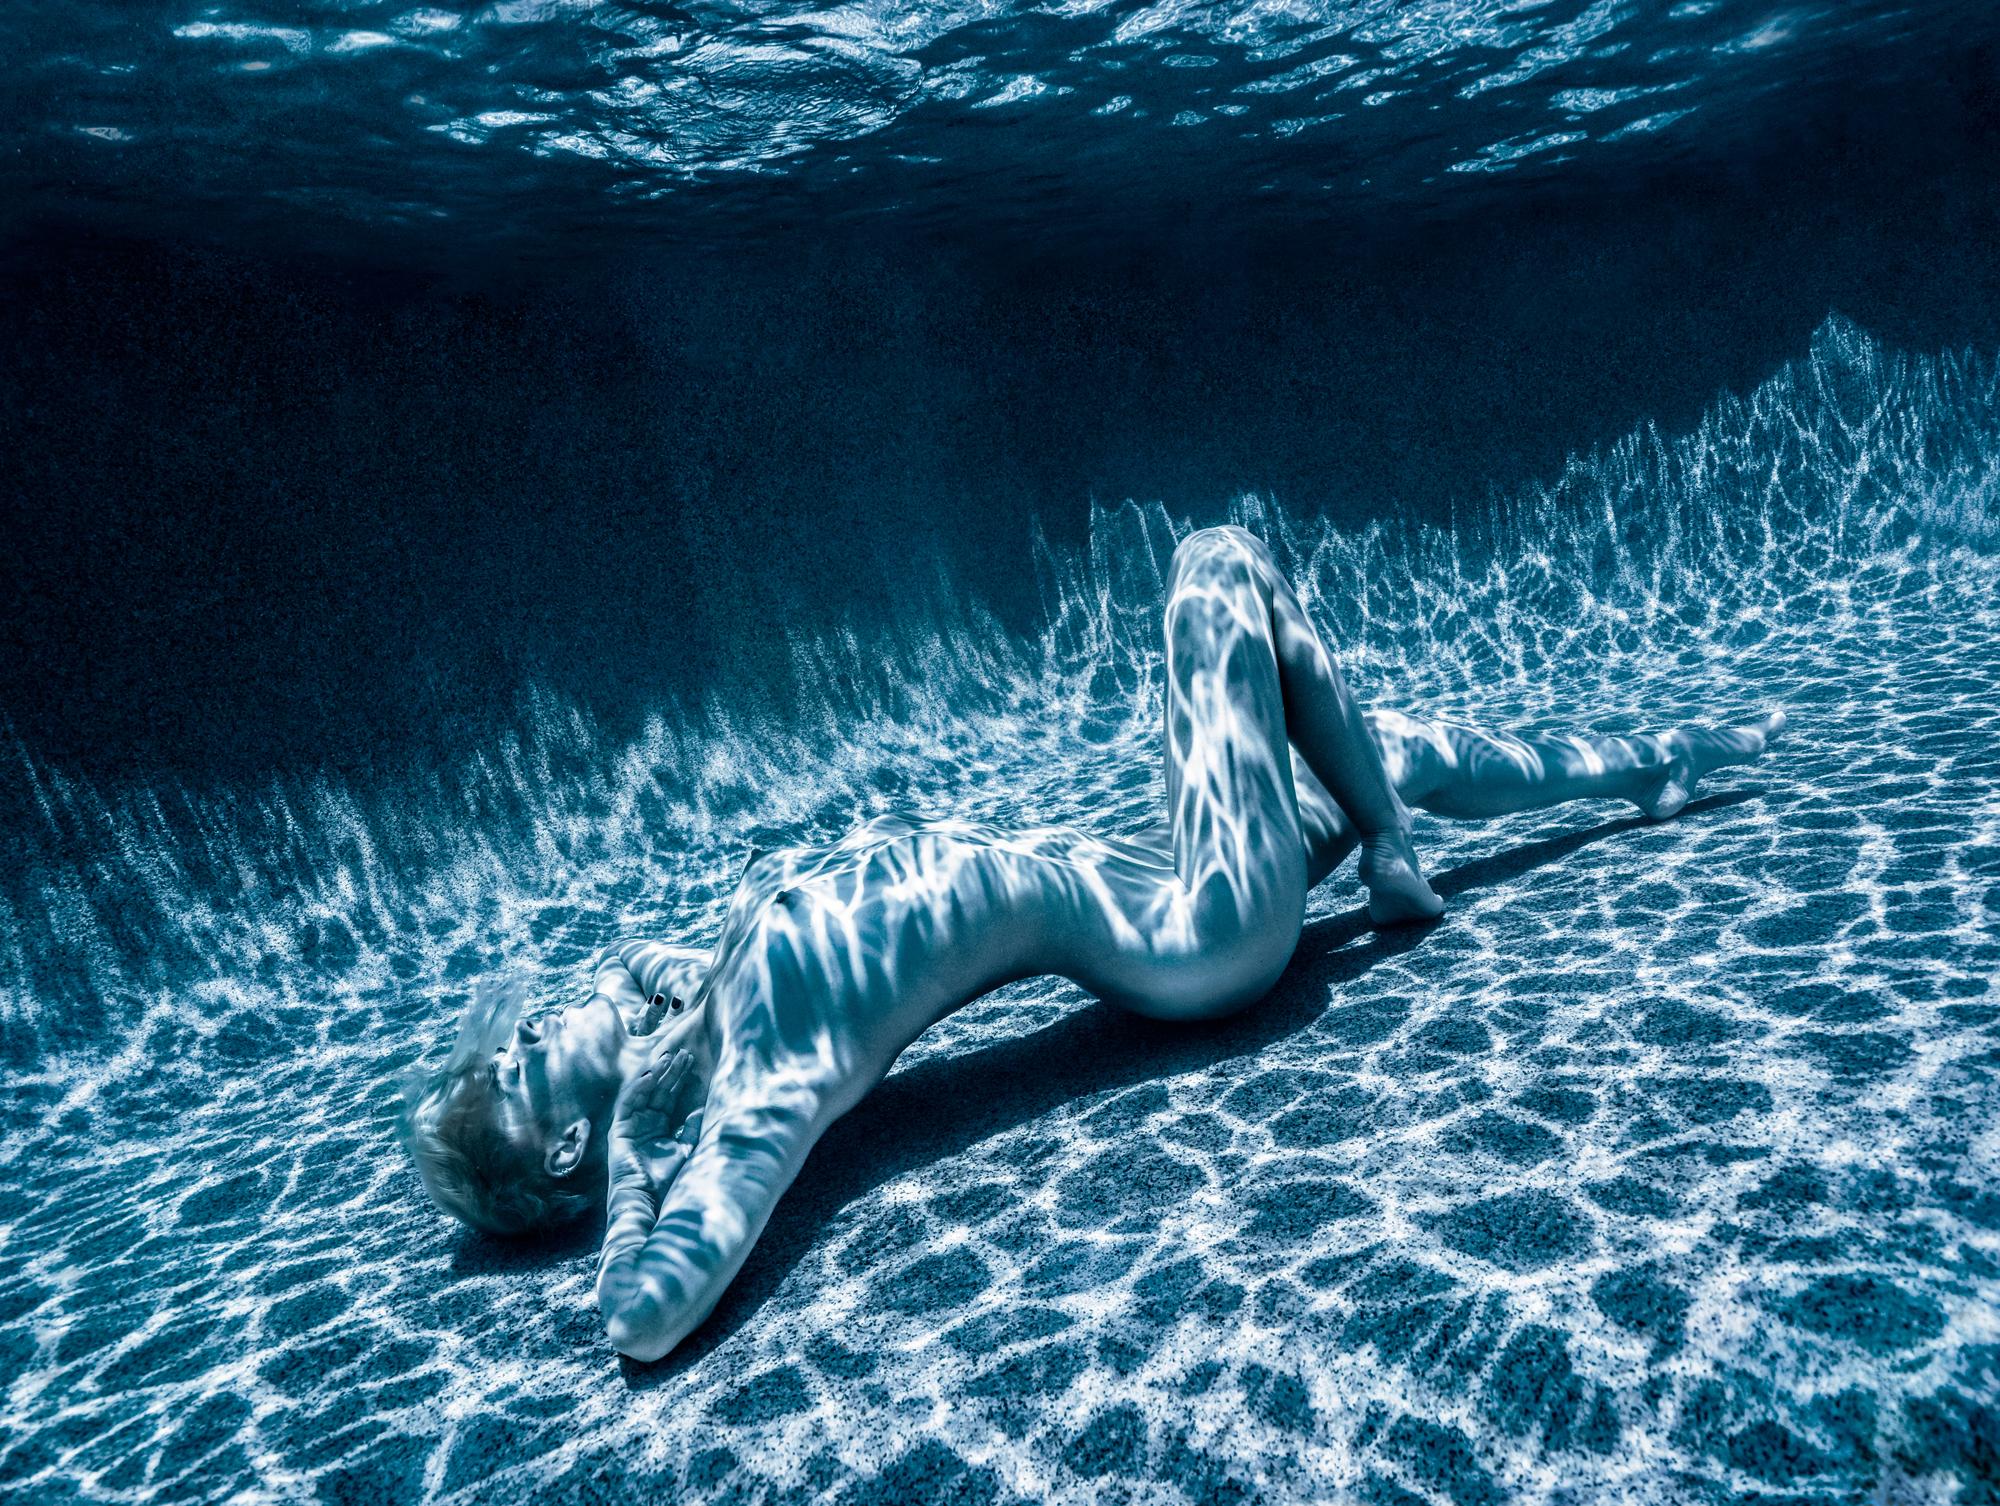 La lumière de lune - photographie de nu sous-marine - impression pigmentaire d'archives 18x24